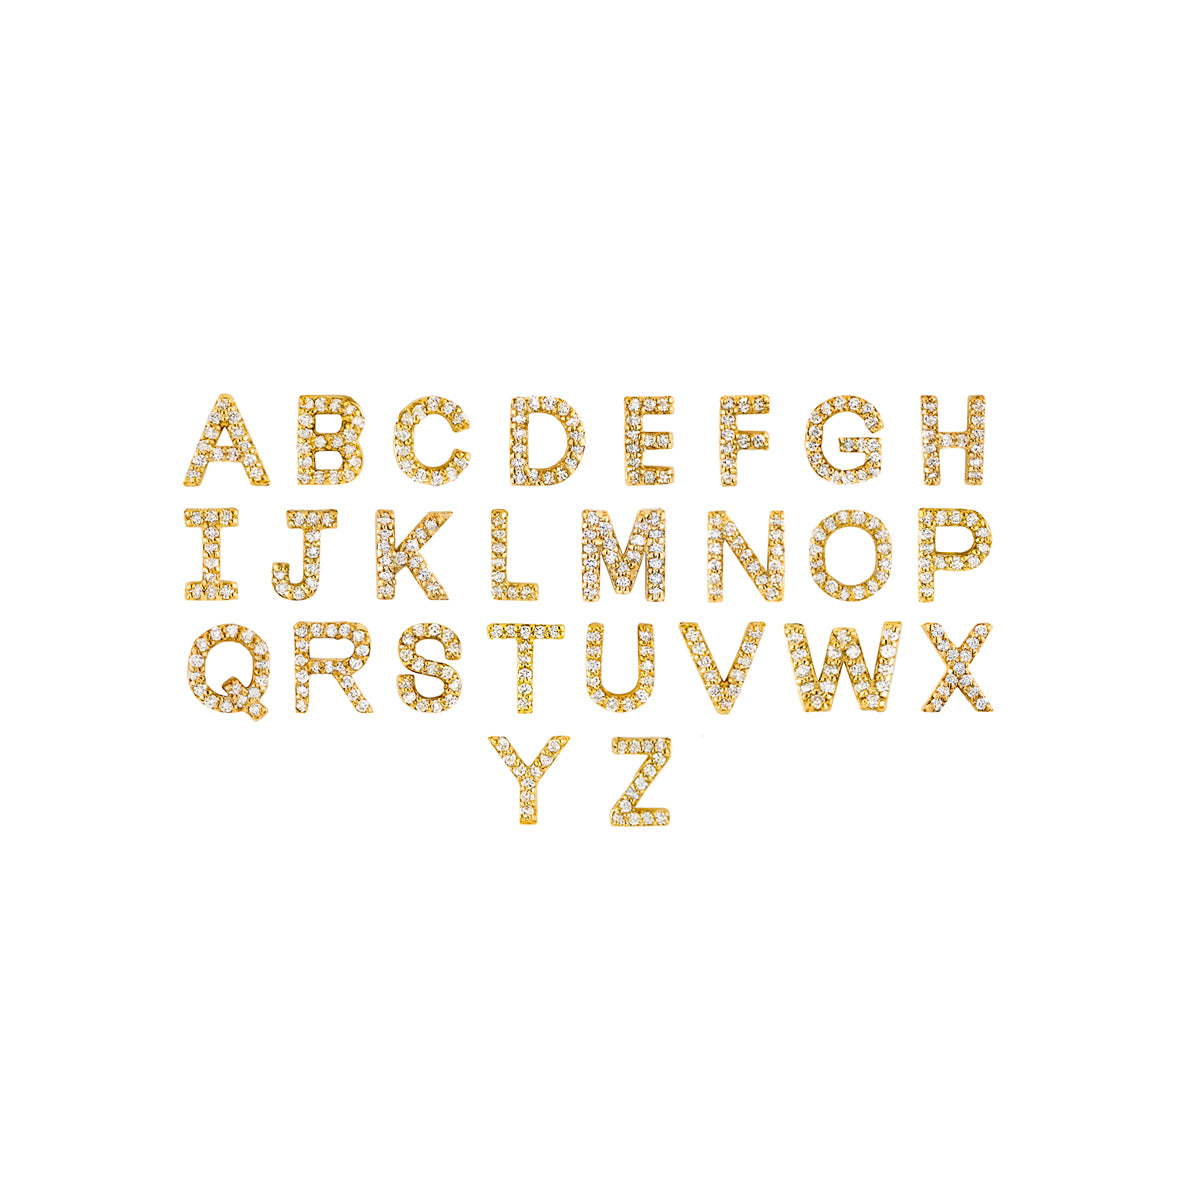 all diamond letter pendant charms in gold 1_c336ffac 7e72 4898 80ec b52664ca3006